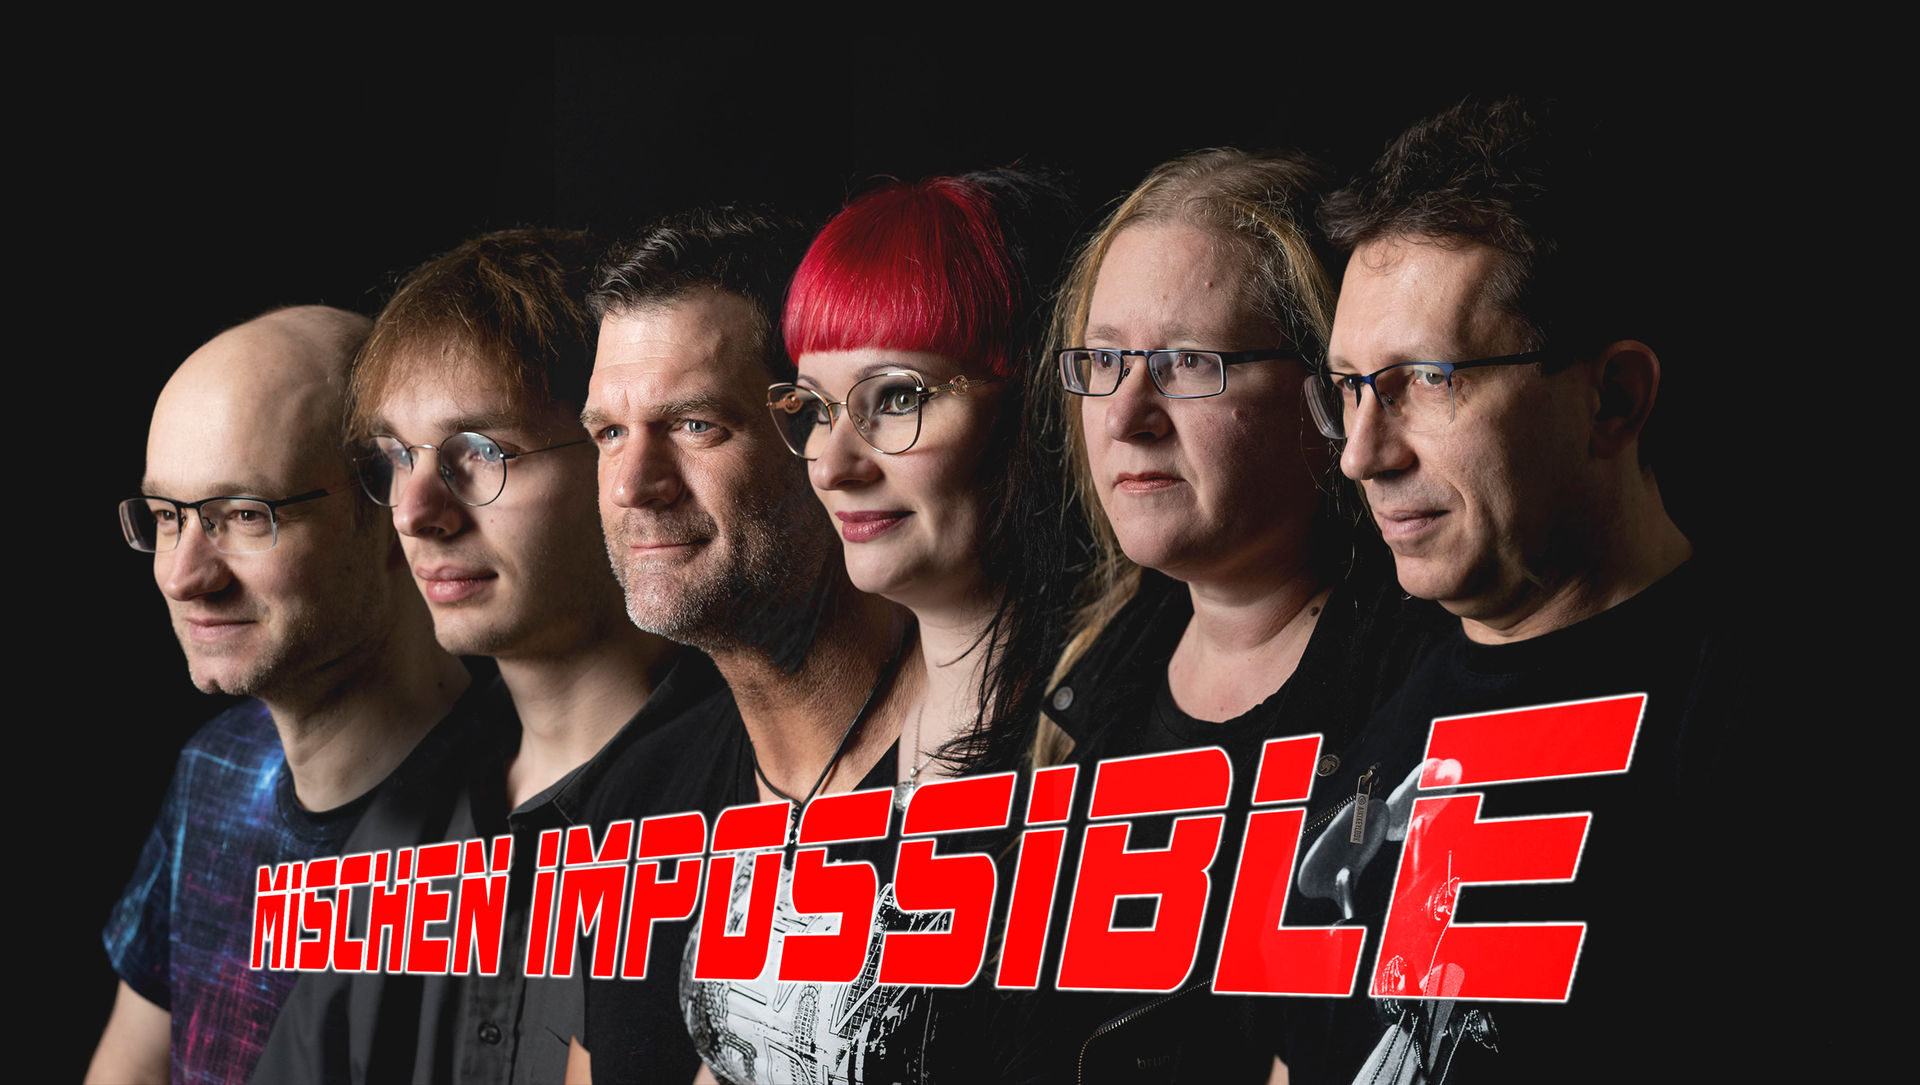 Mischen Impossible: Band mit Logo